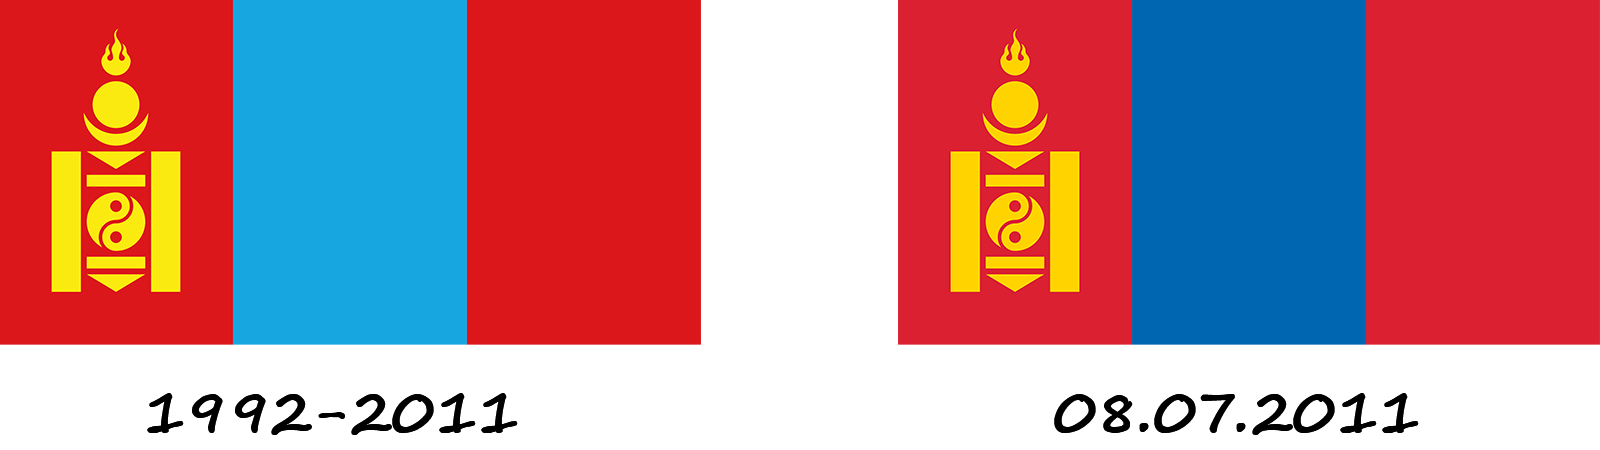 Історія прапору Монголії